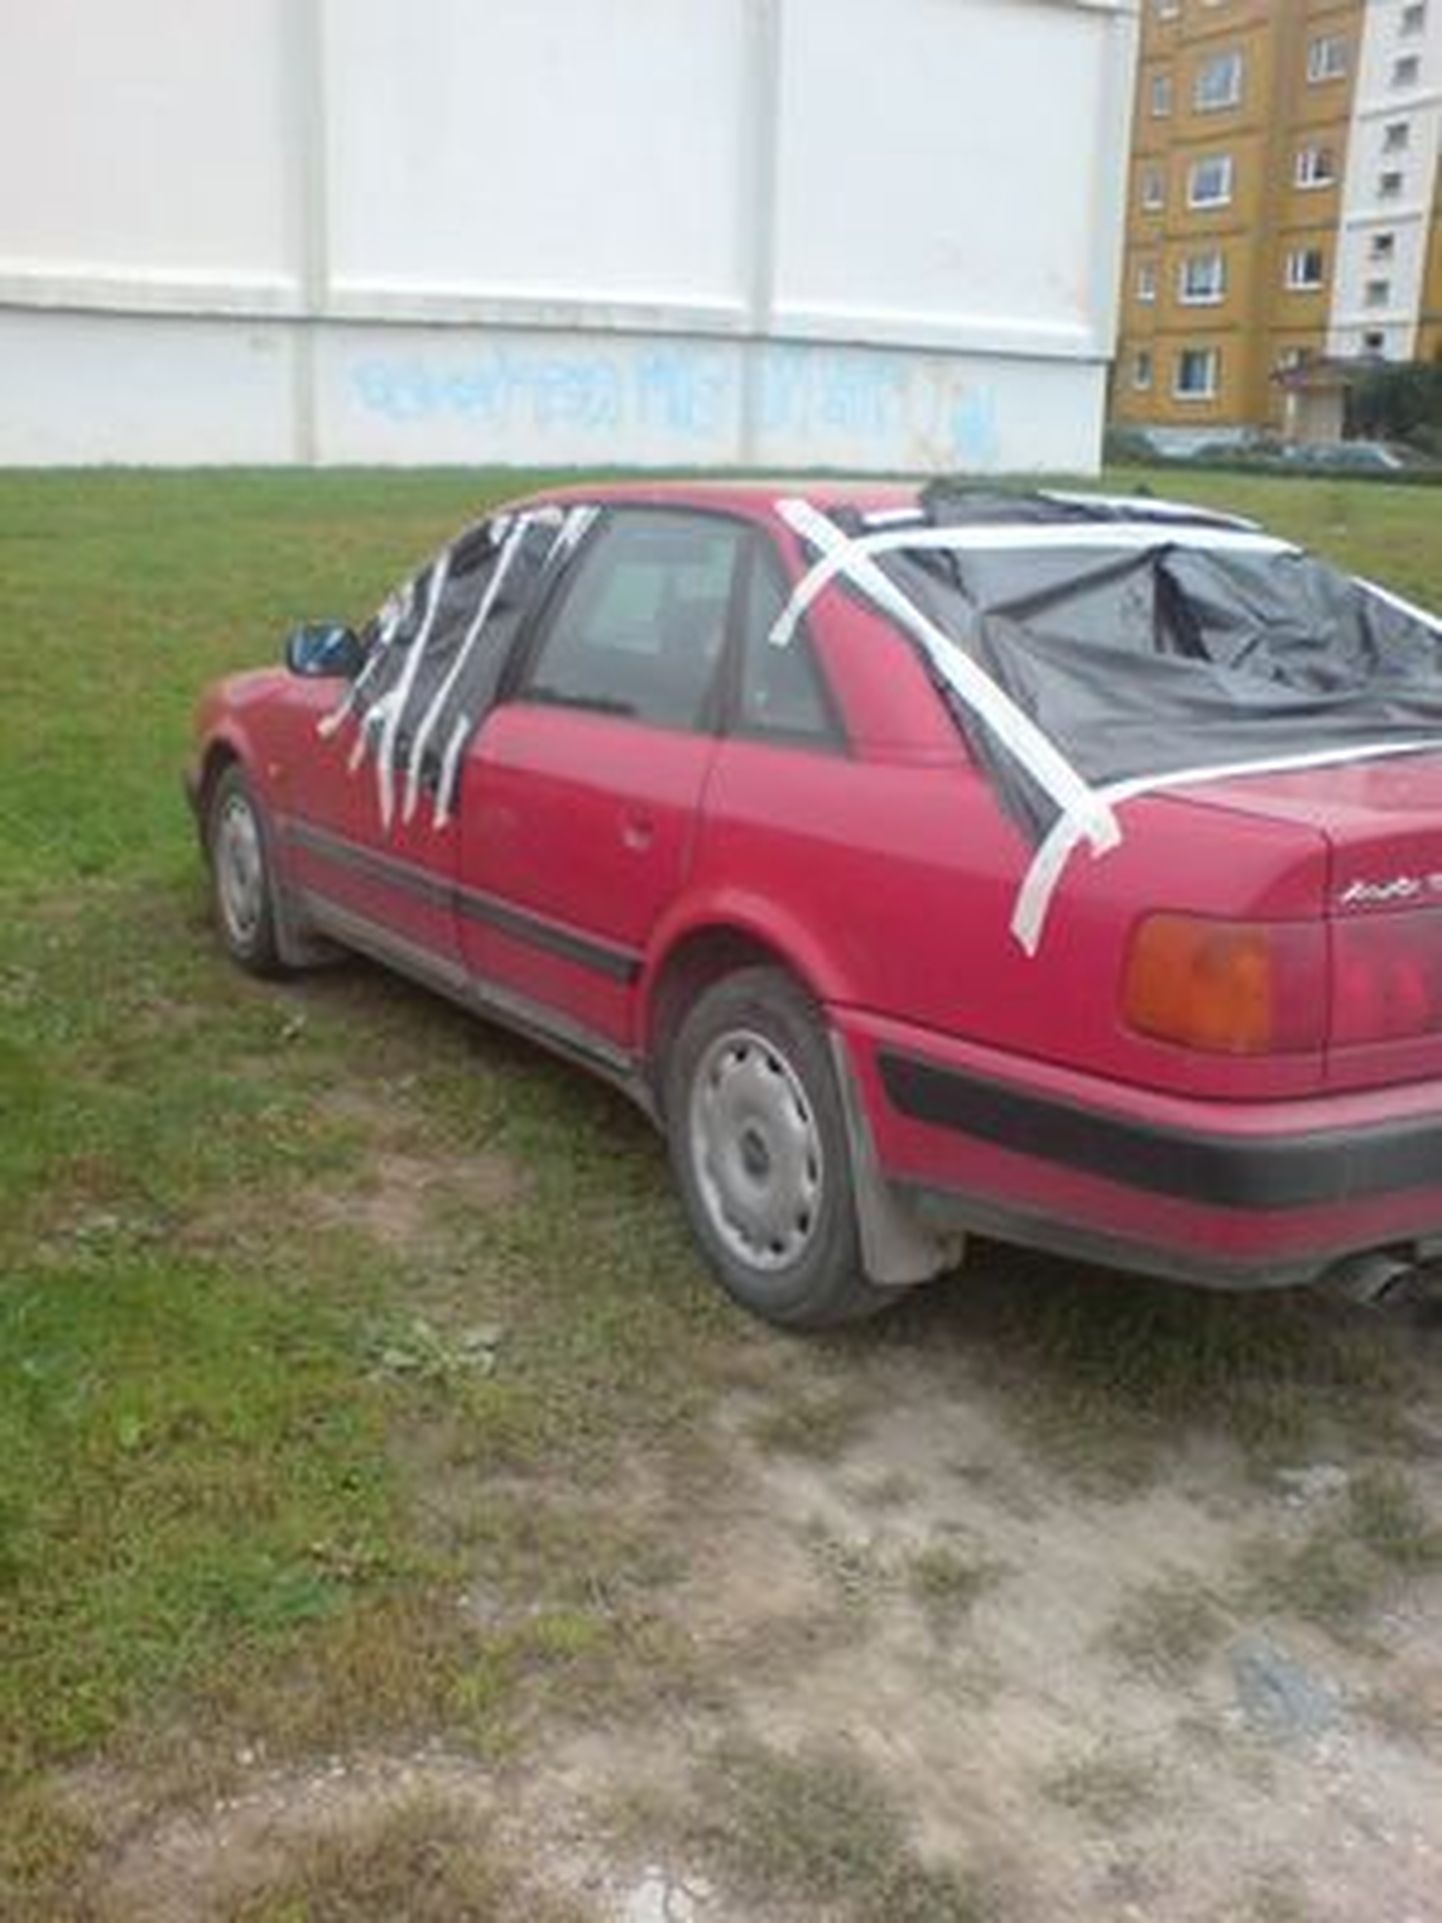 Rüüstajate ohvriks langenud Audi.